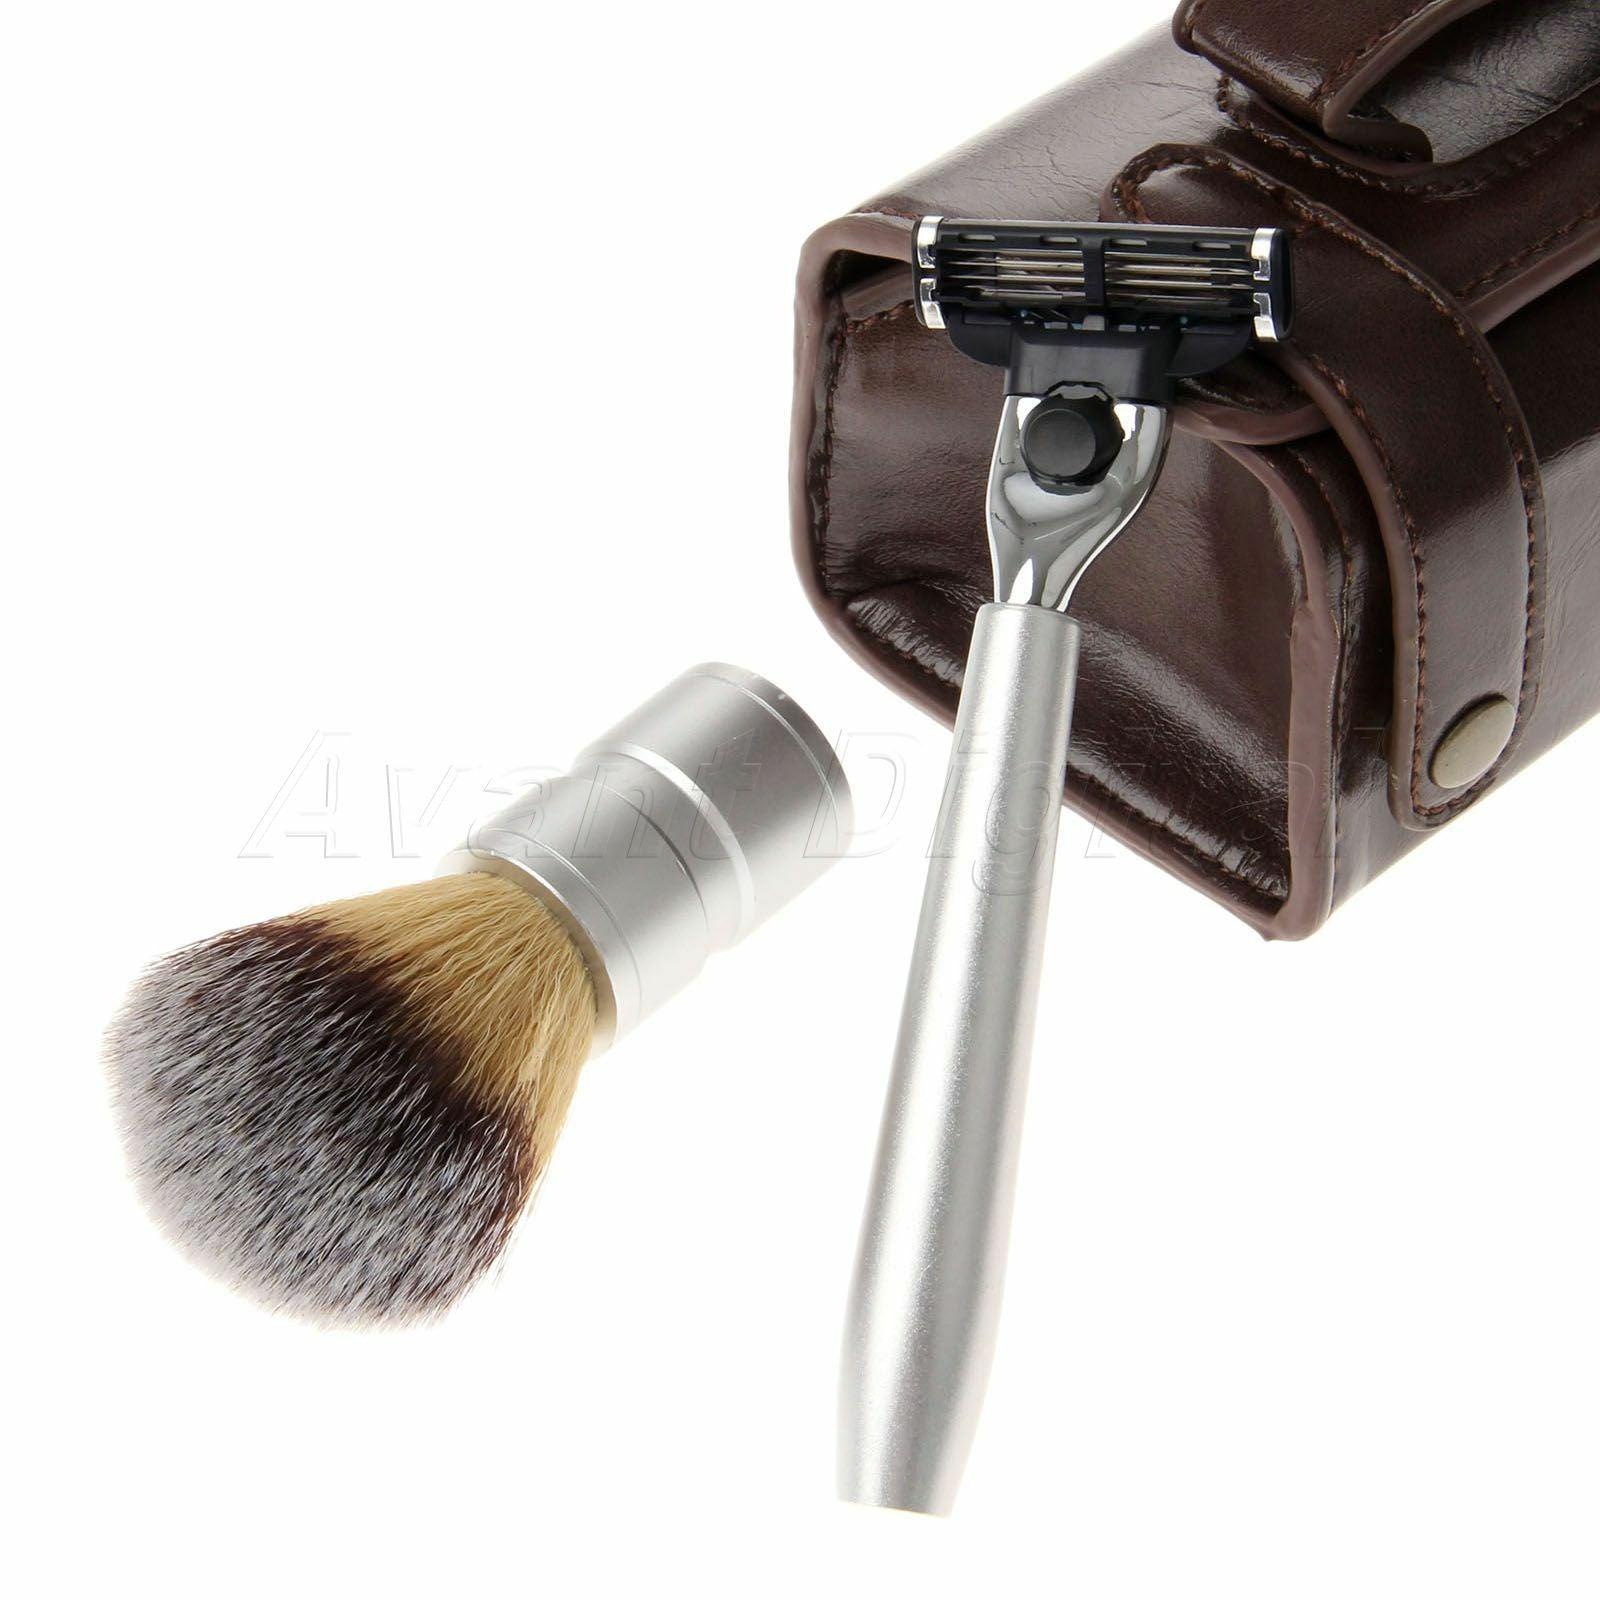 3 in 1 Men's Shaving Razor & Badger Hair Brush + PU Leather Case Bag Travel Use